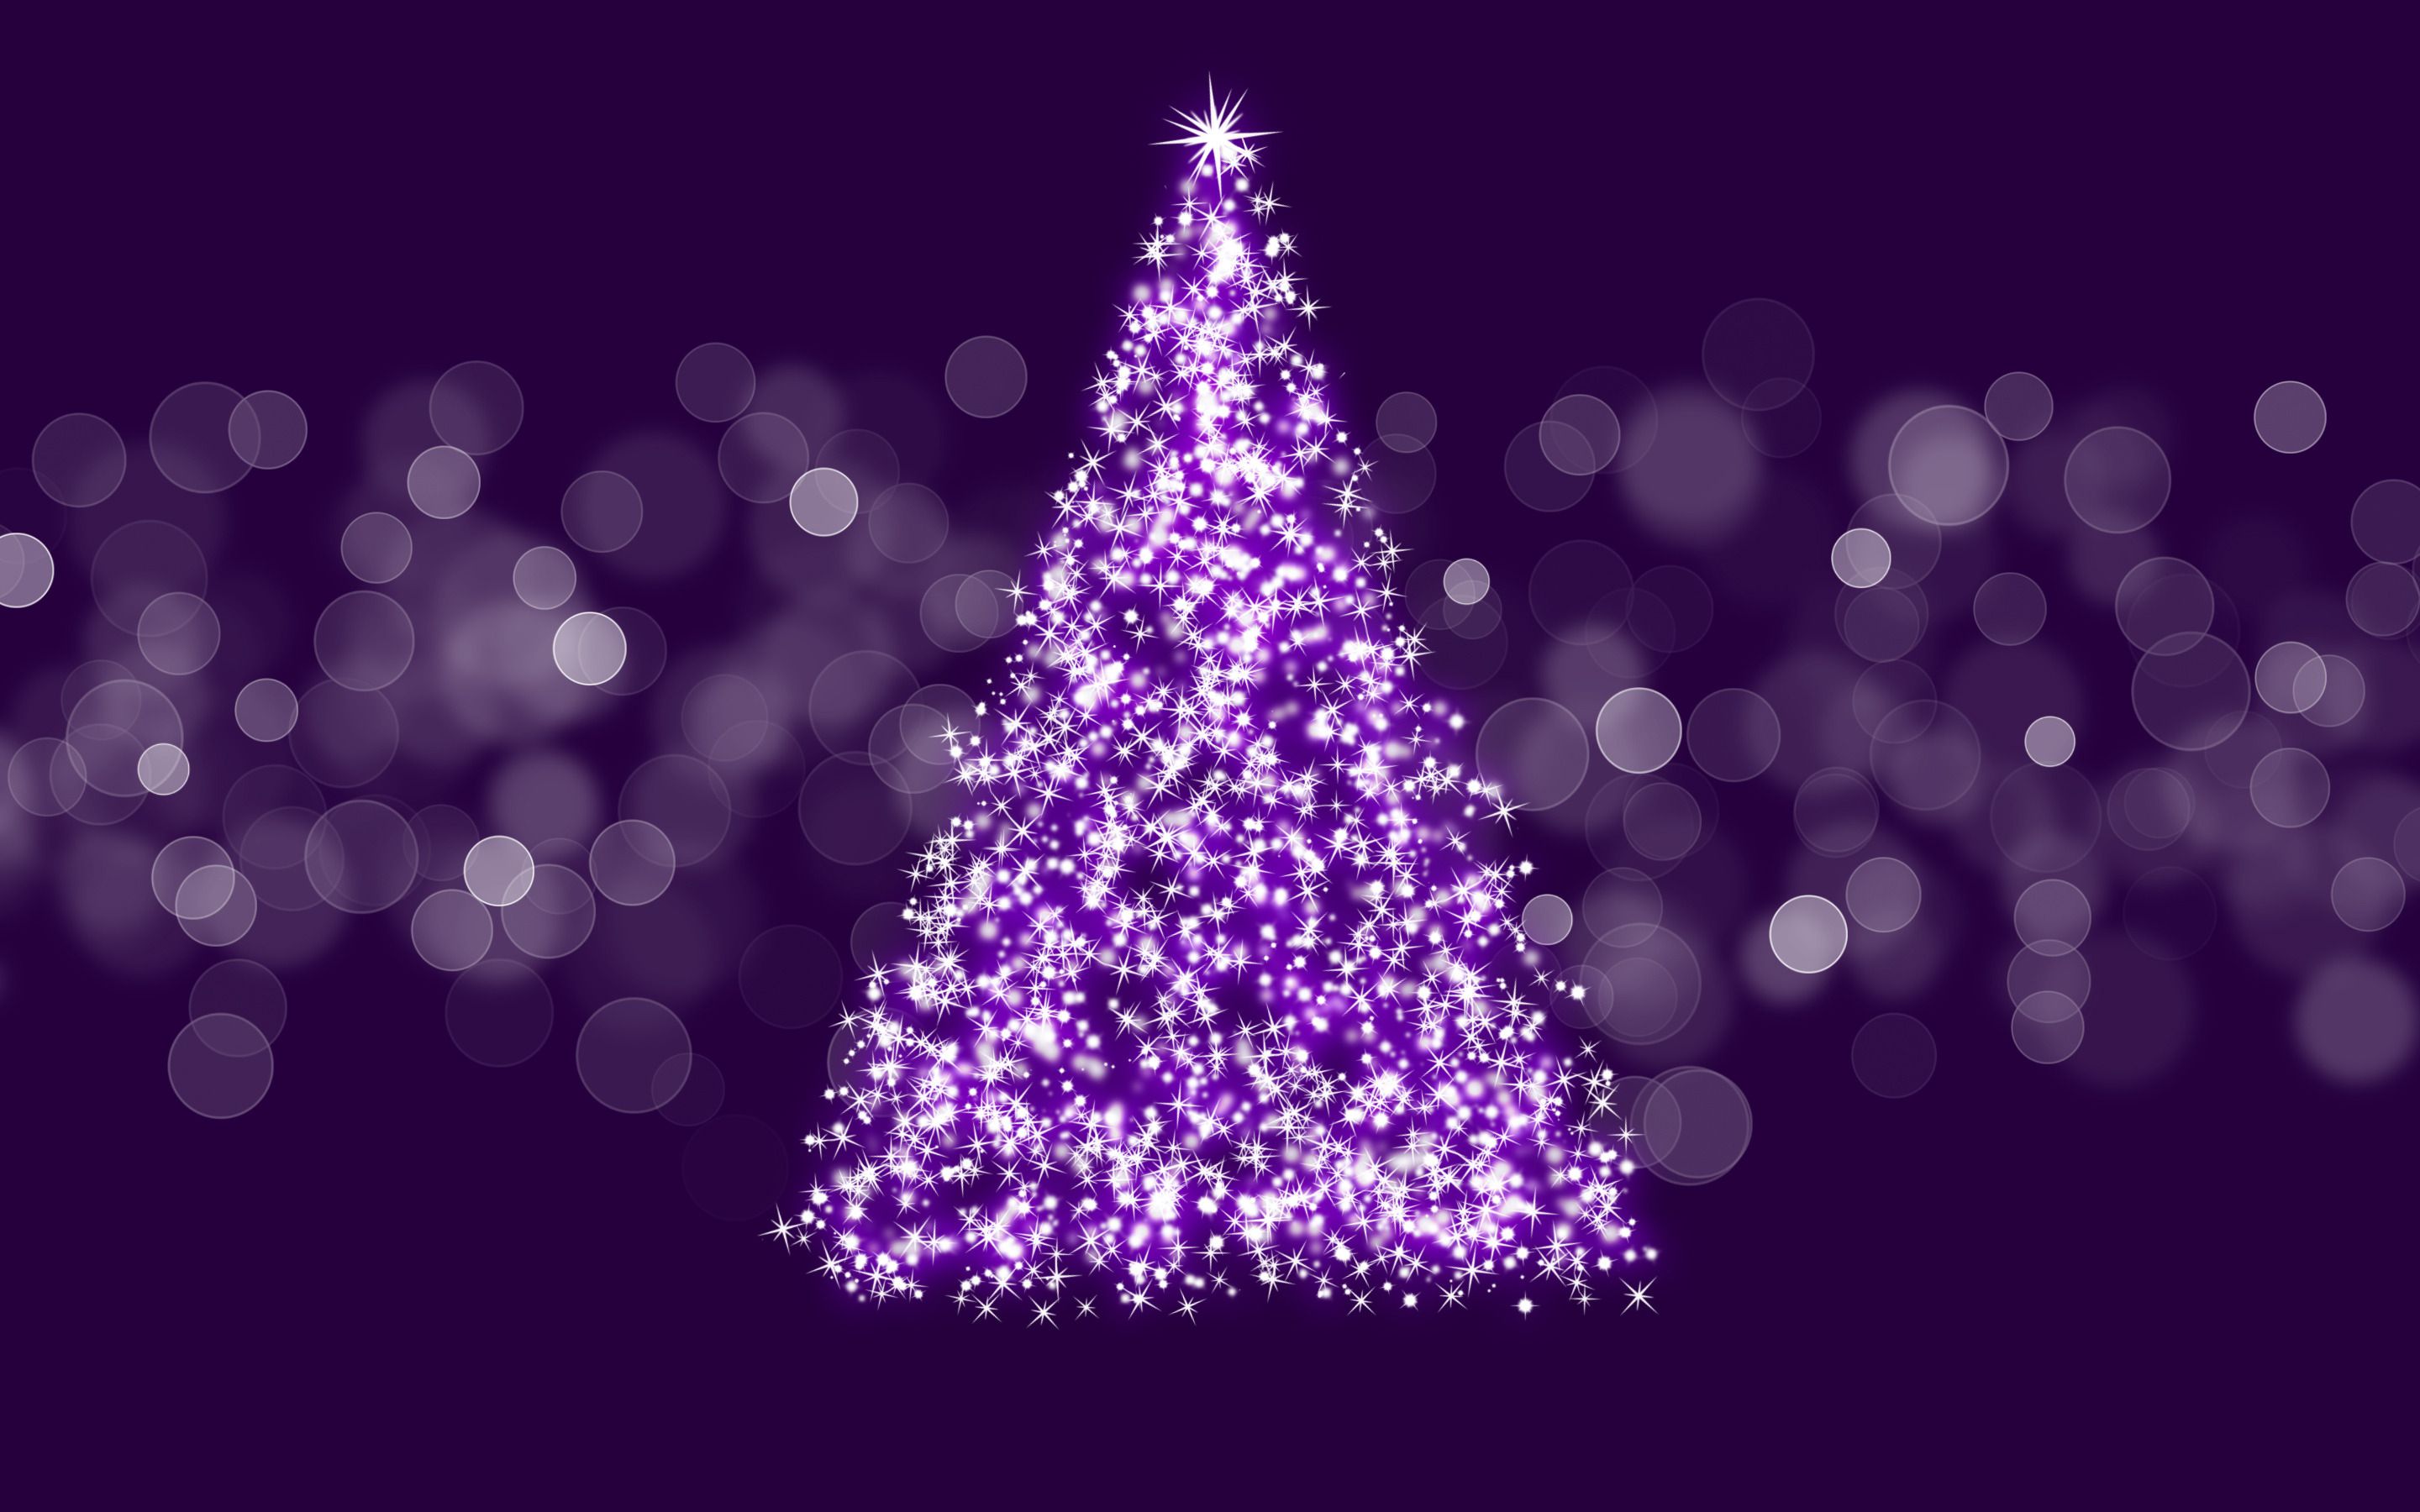 Không gian mùa Giáng sinh tím đậm với những ánh đèn lấp lánh, cây thông đắm đuối, sẽ giúp bạn có những khoảnh khắc thật đẹp và ý nghĩa trong đêm Noel này. Không nên bỏ lỡ Bộ sưu tập Hình nền Giáng sinh tím đậm đang chờ đón bạn!